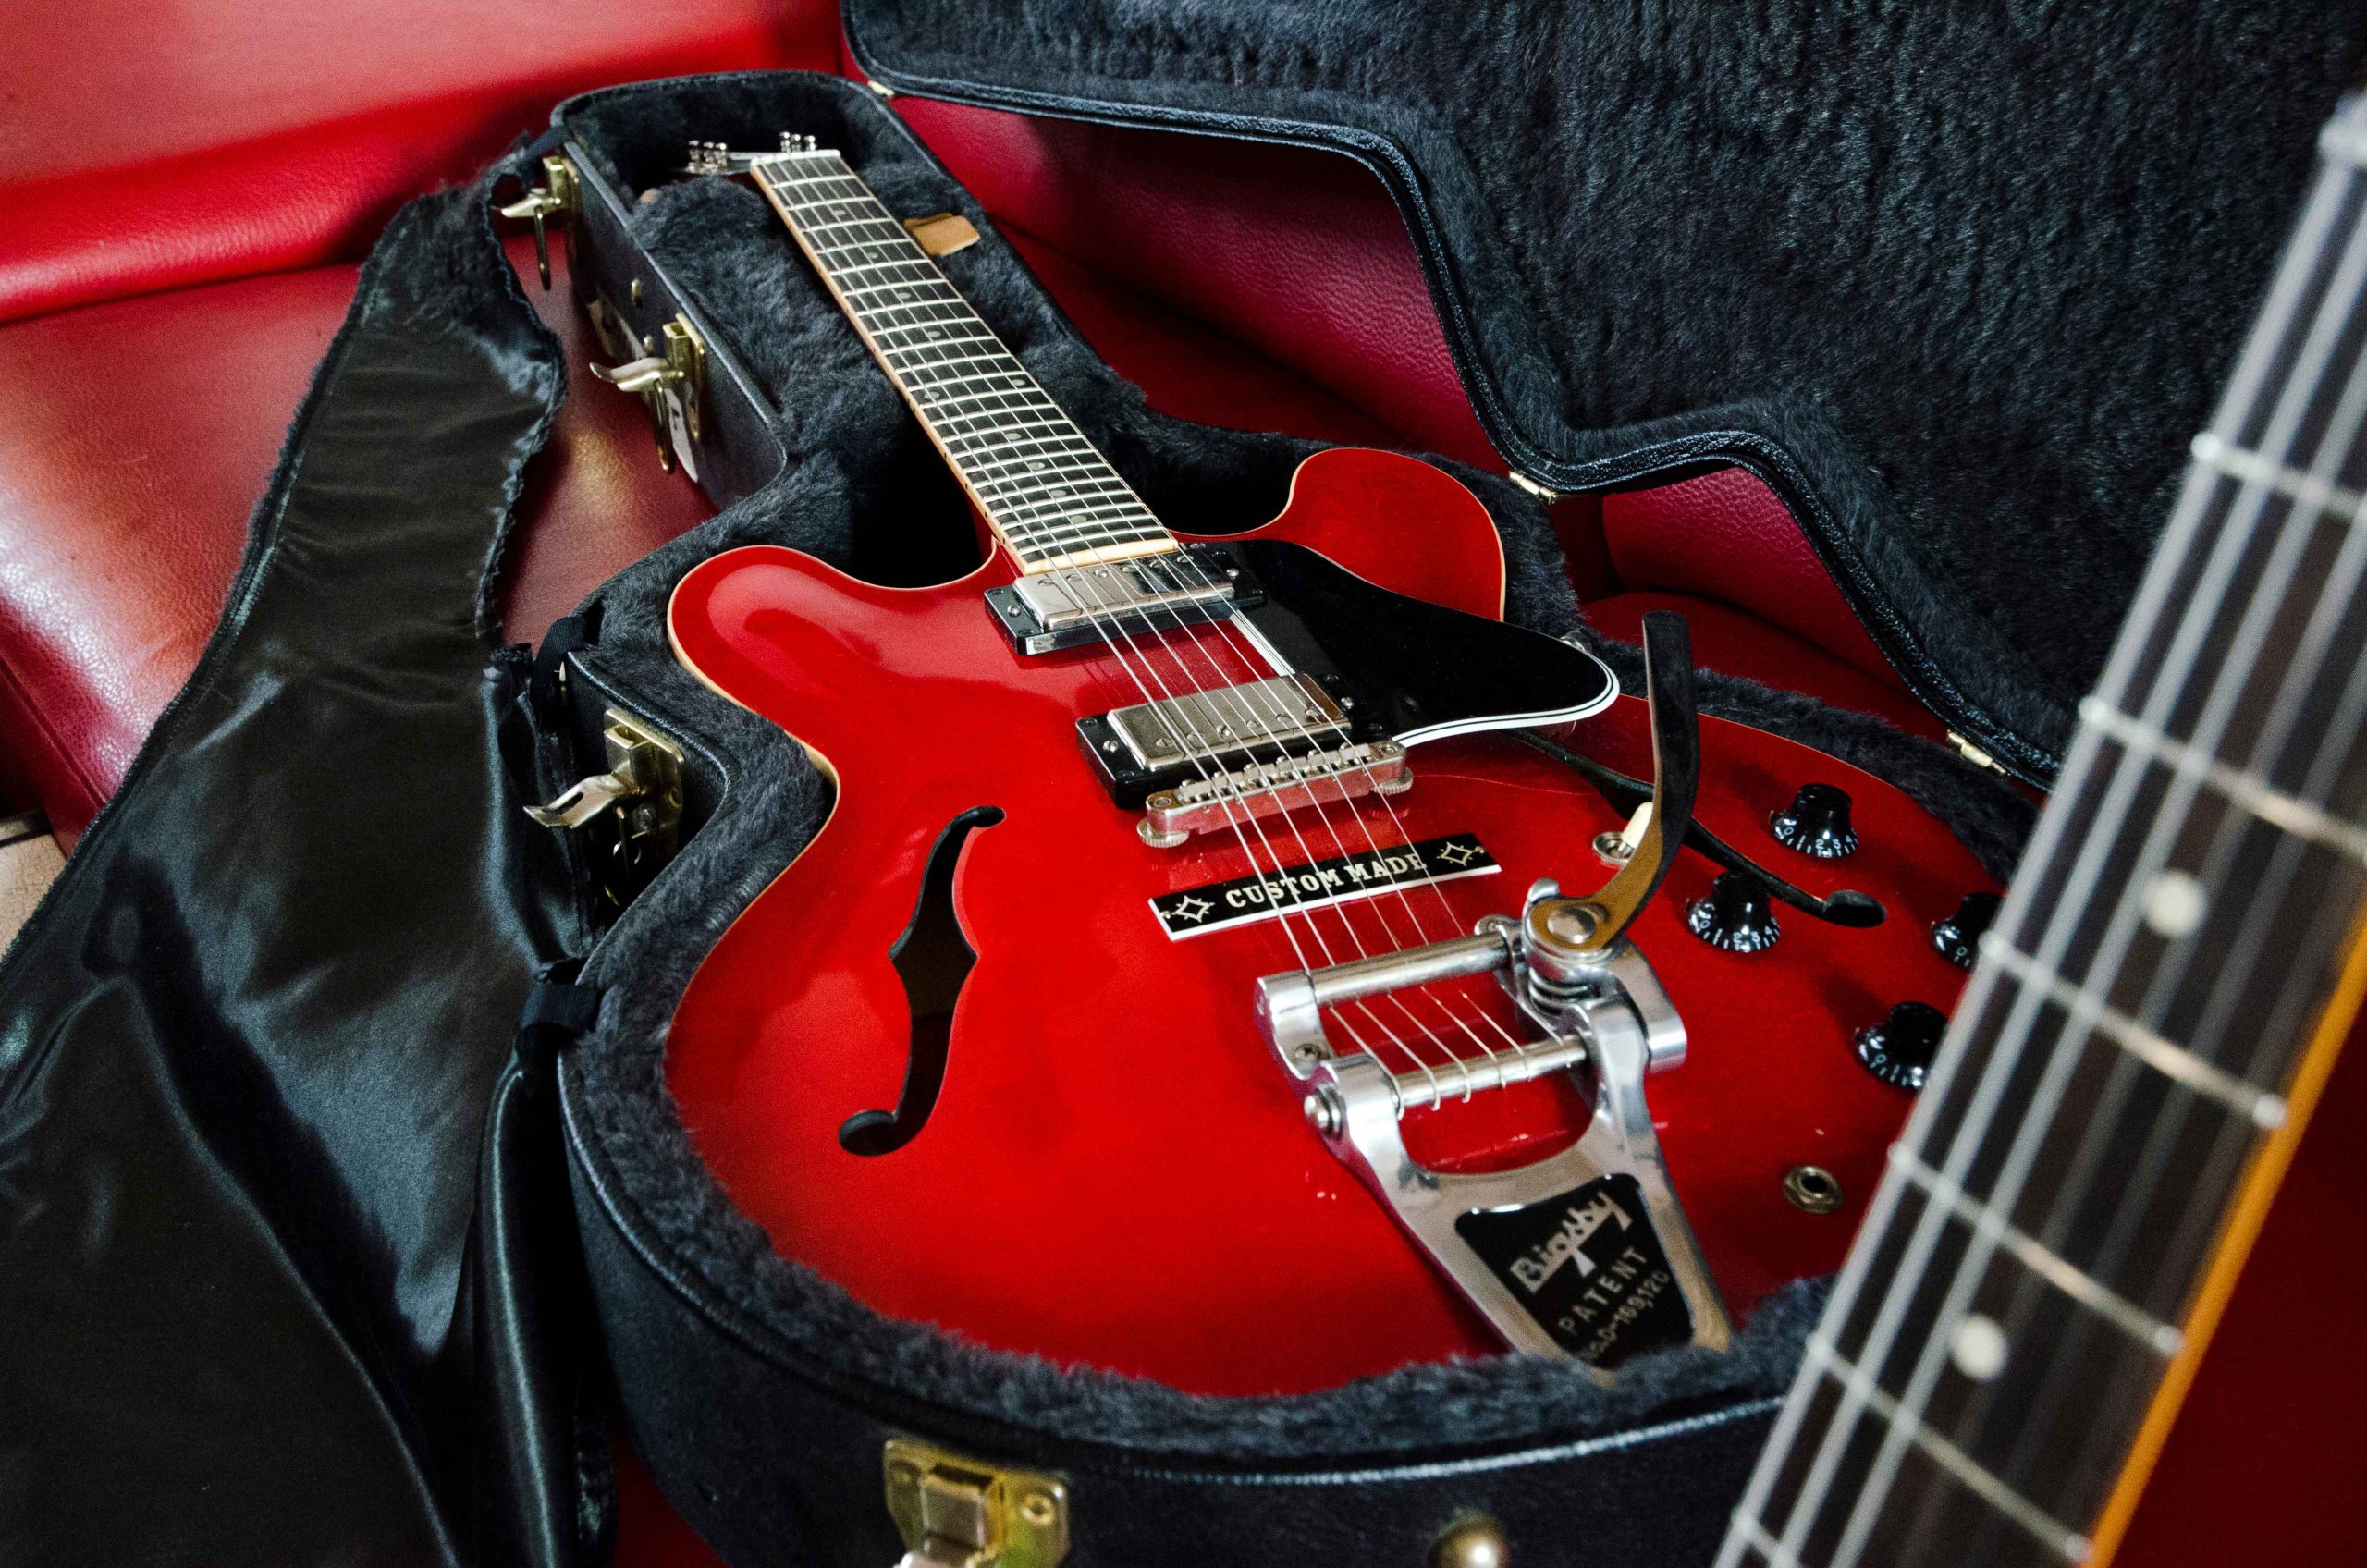 Gibson Es-335 Custom shop Bigsby - Chuck Berry klasszikusa, a Johnny B. Goode is ilyen hangszeren íródott, ő használta ezt a típust szintén ‘reissue’. Ár: 4-5 ezer euro (1,7 millió forint).